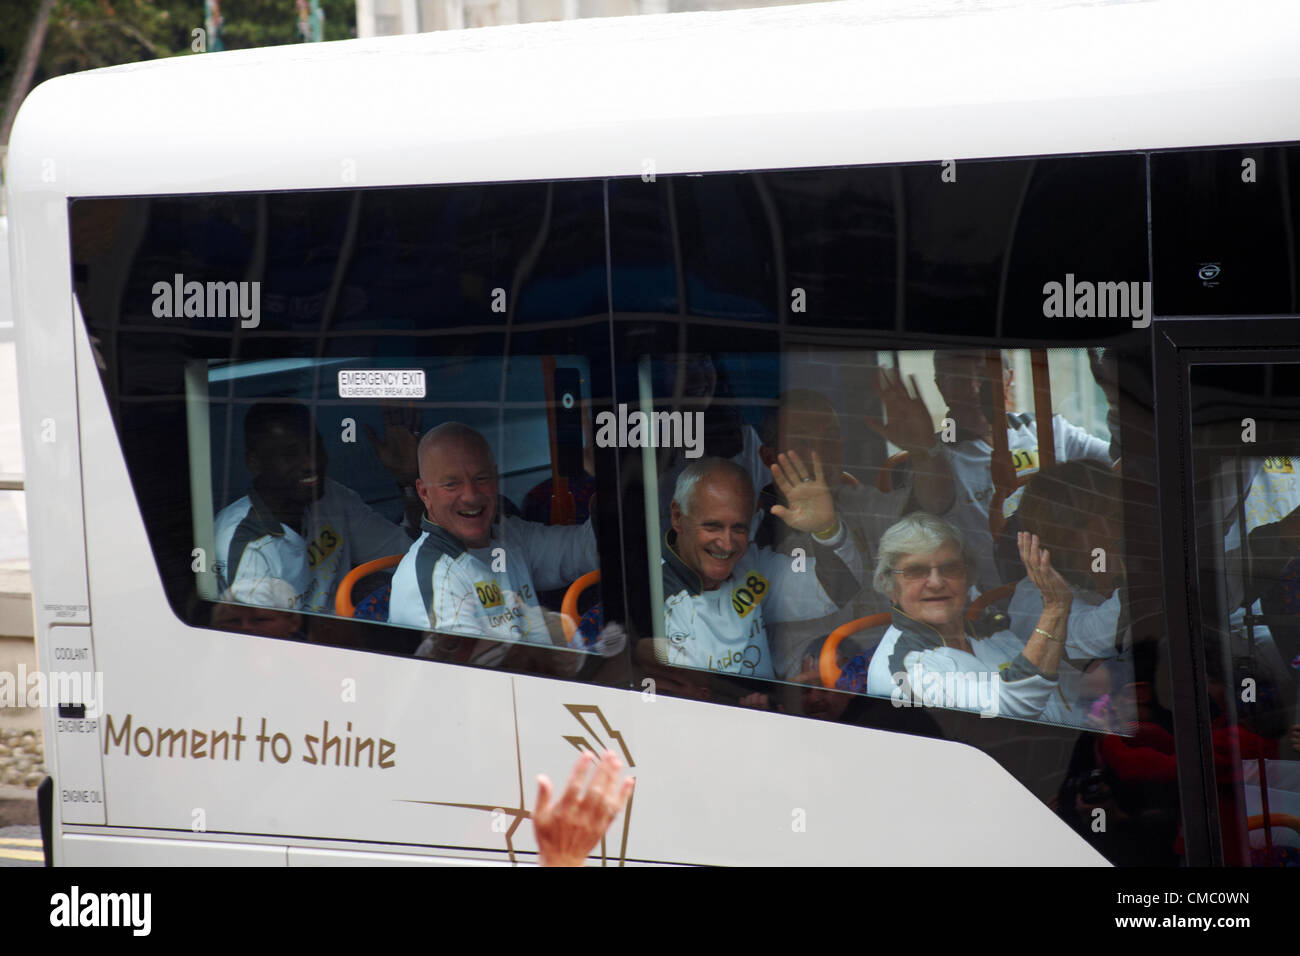 Bournemouth, UK Samstag, 14. Juli 2012. Olympic Torch Relay verlässt Bournemouth, UK - Moment zu glänzen. Olympische Fackel Staffelläufer im Bus in Bournemouth am Samstagmorgen Stockfoto